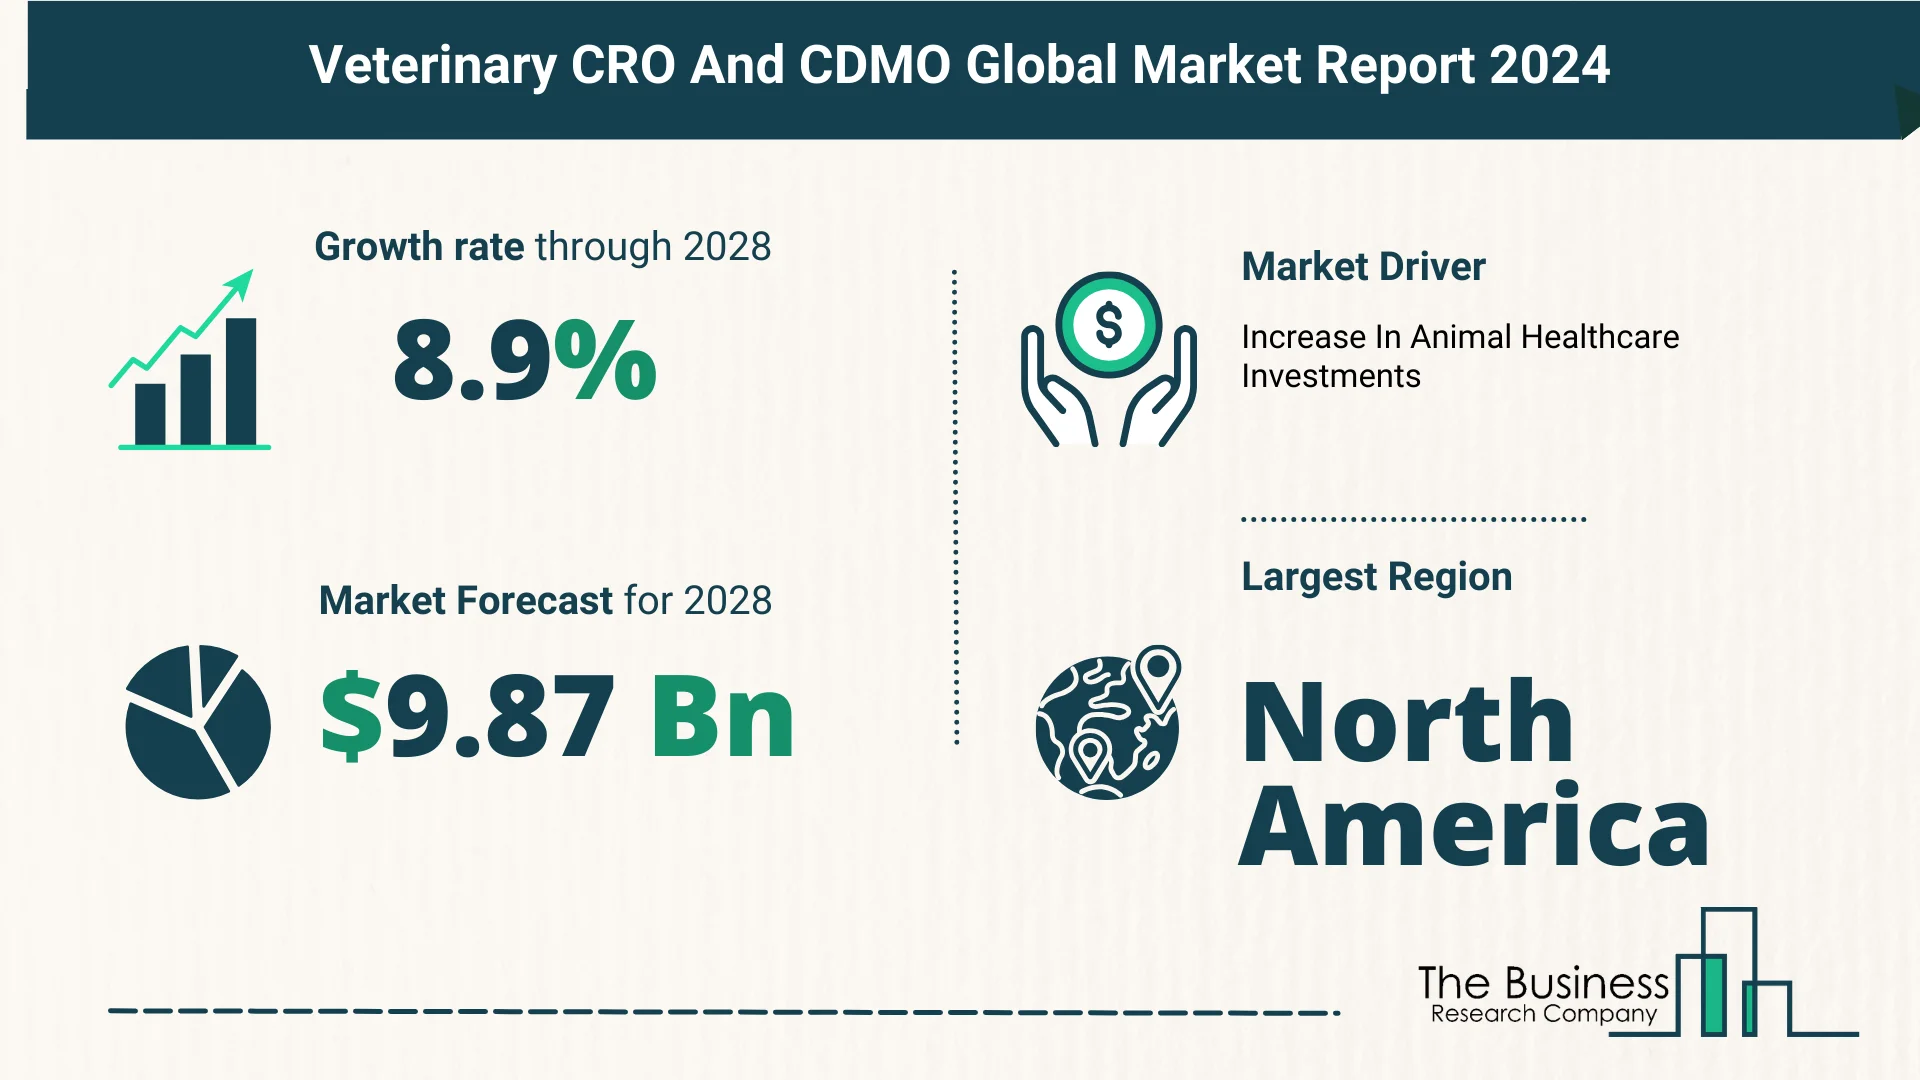 Global Veterinary CRO And CDMO Market